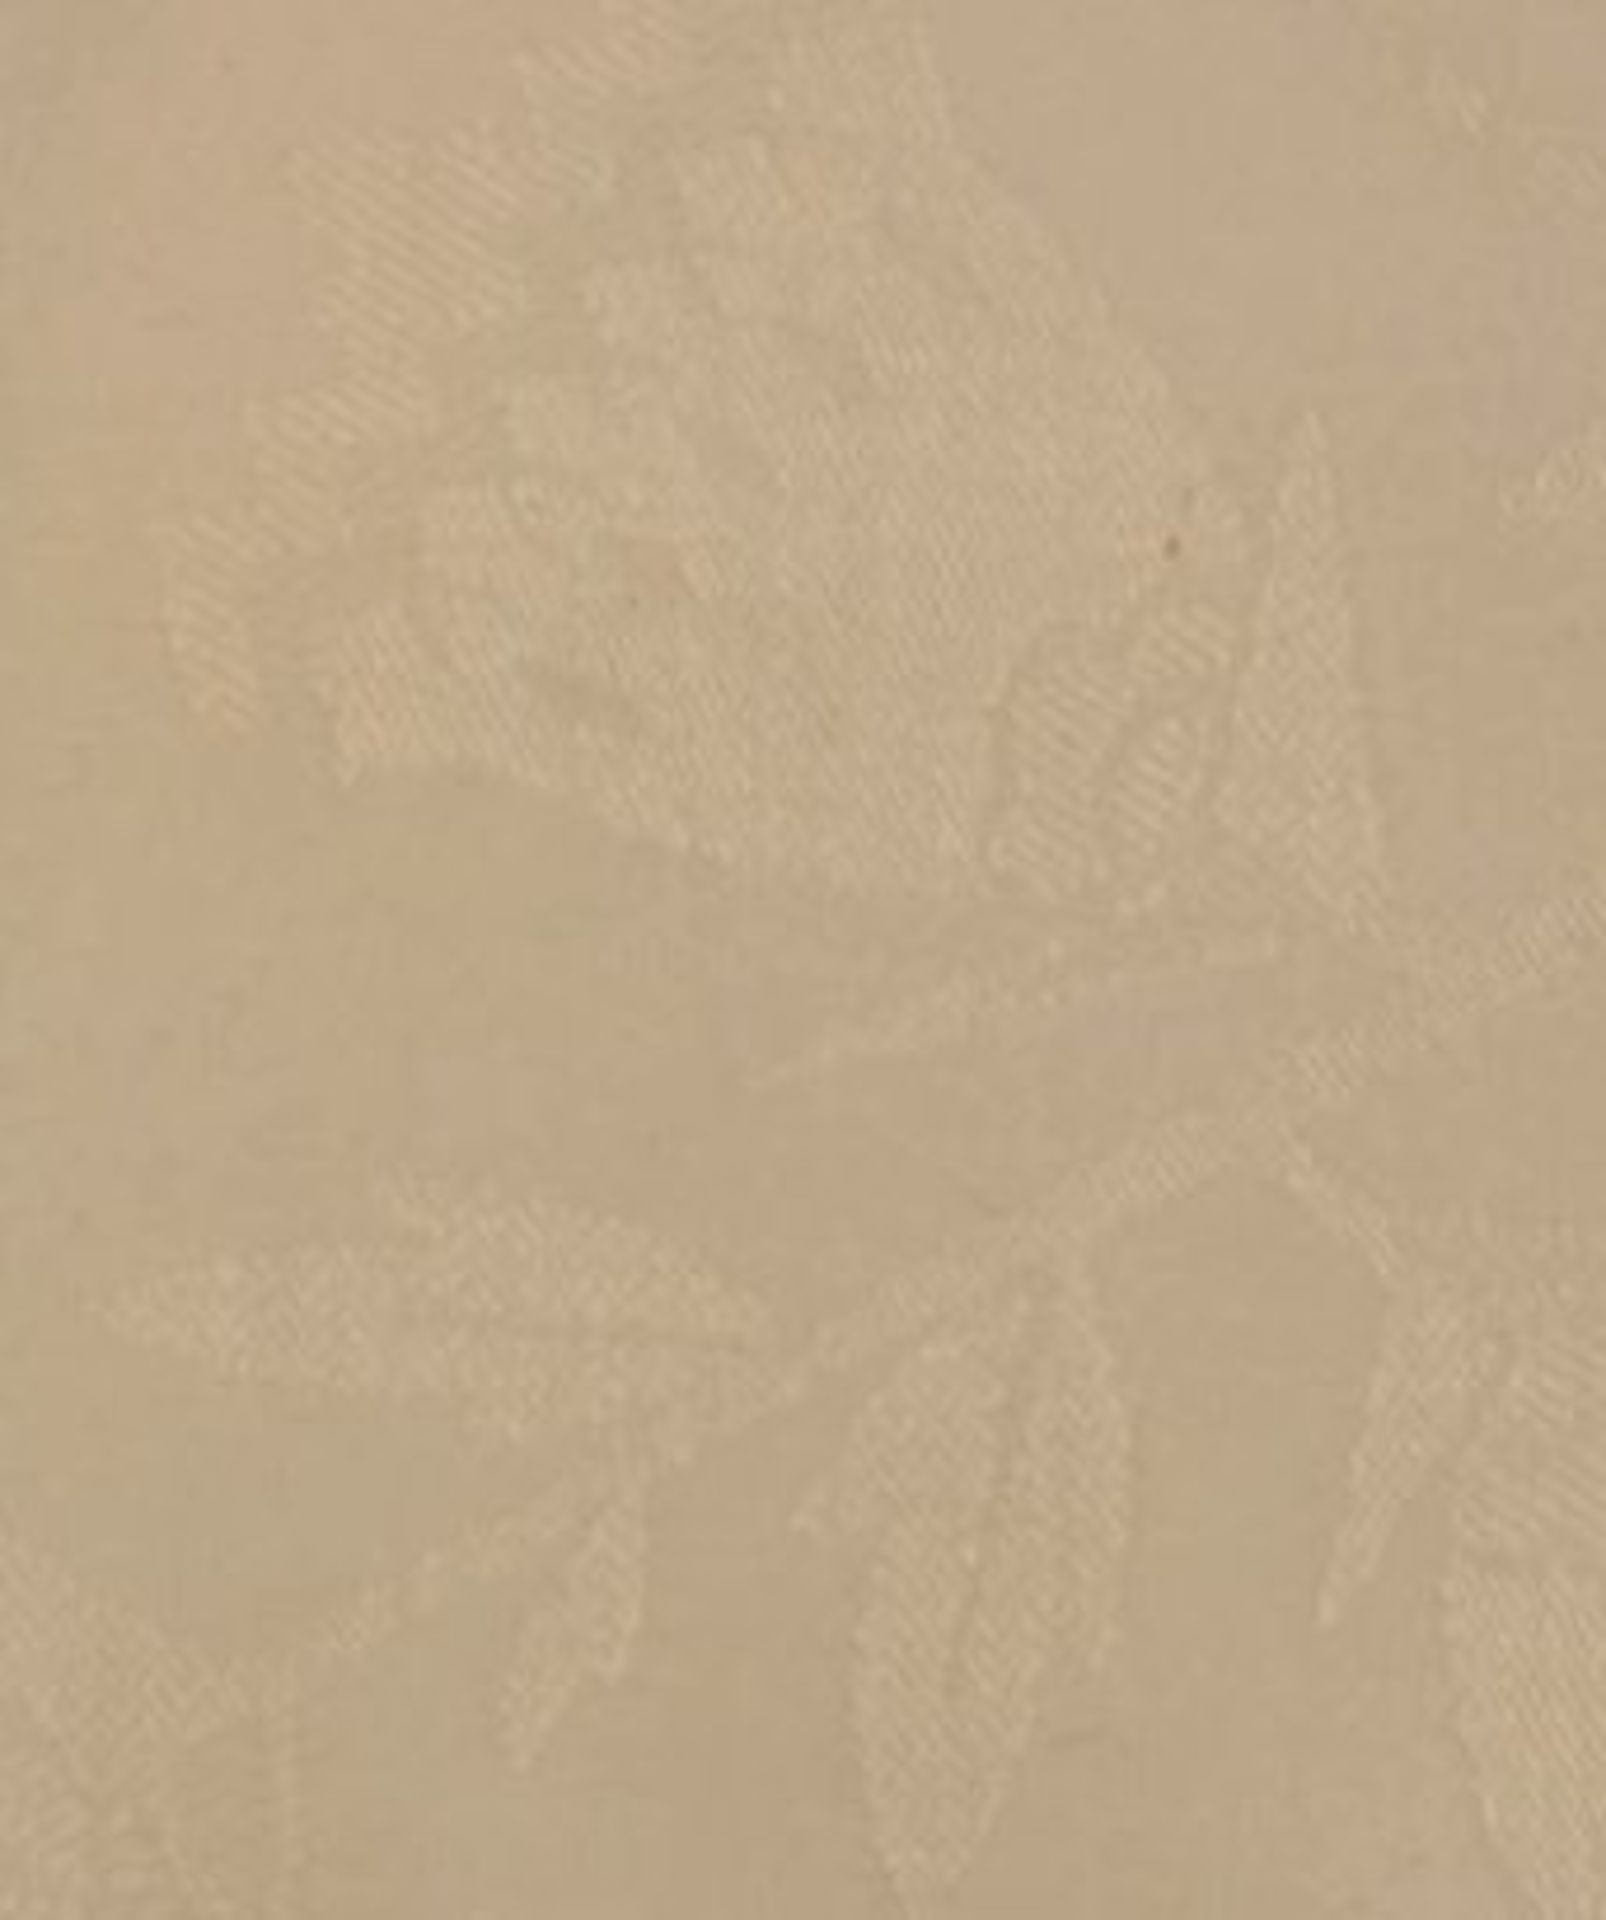 gr. Tischdecke, älter, ca. 120 x 220c - Bild 2 aus 2